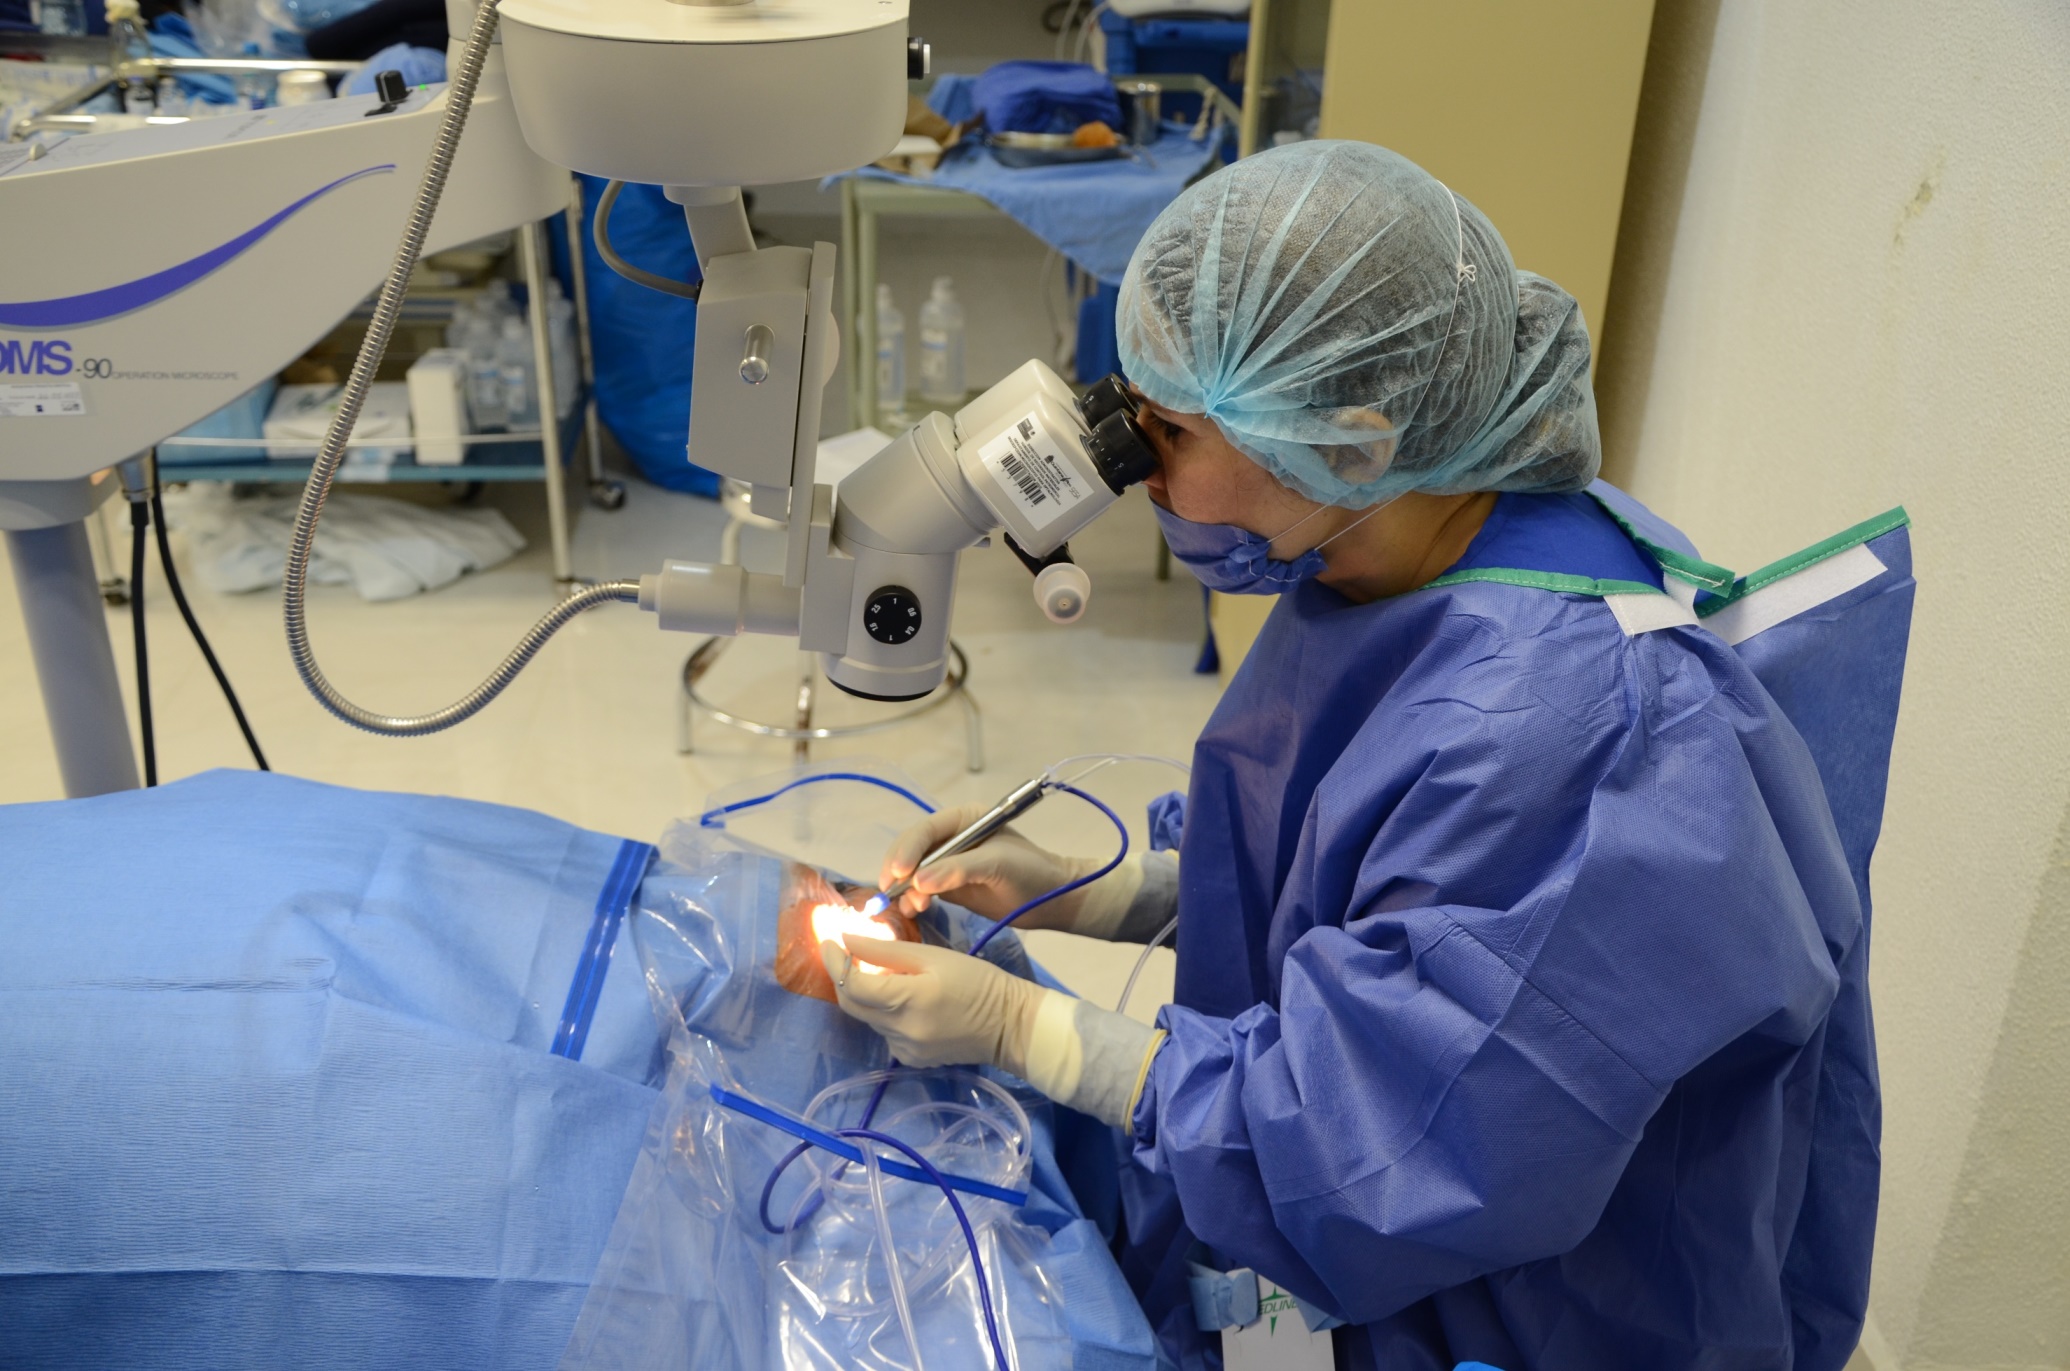 Atenciones oftalmológicas y cirugías de catarata benefician a Moquegua